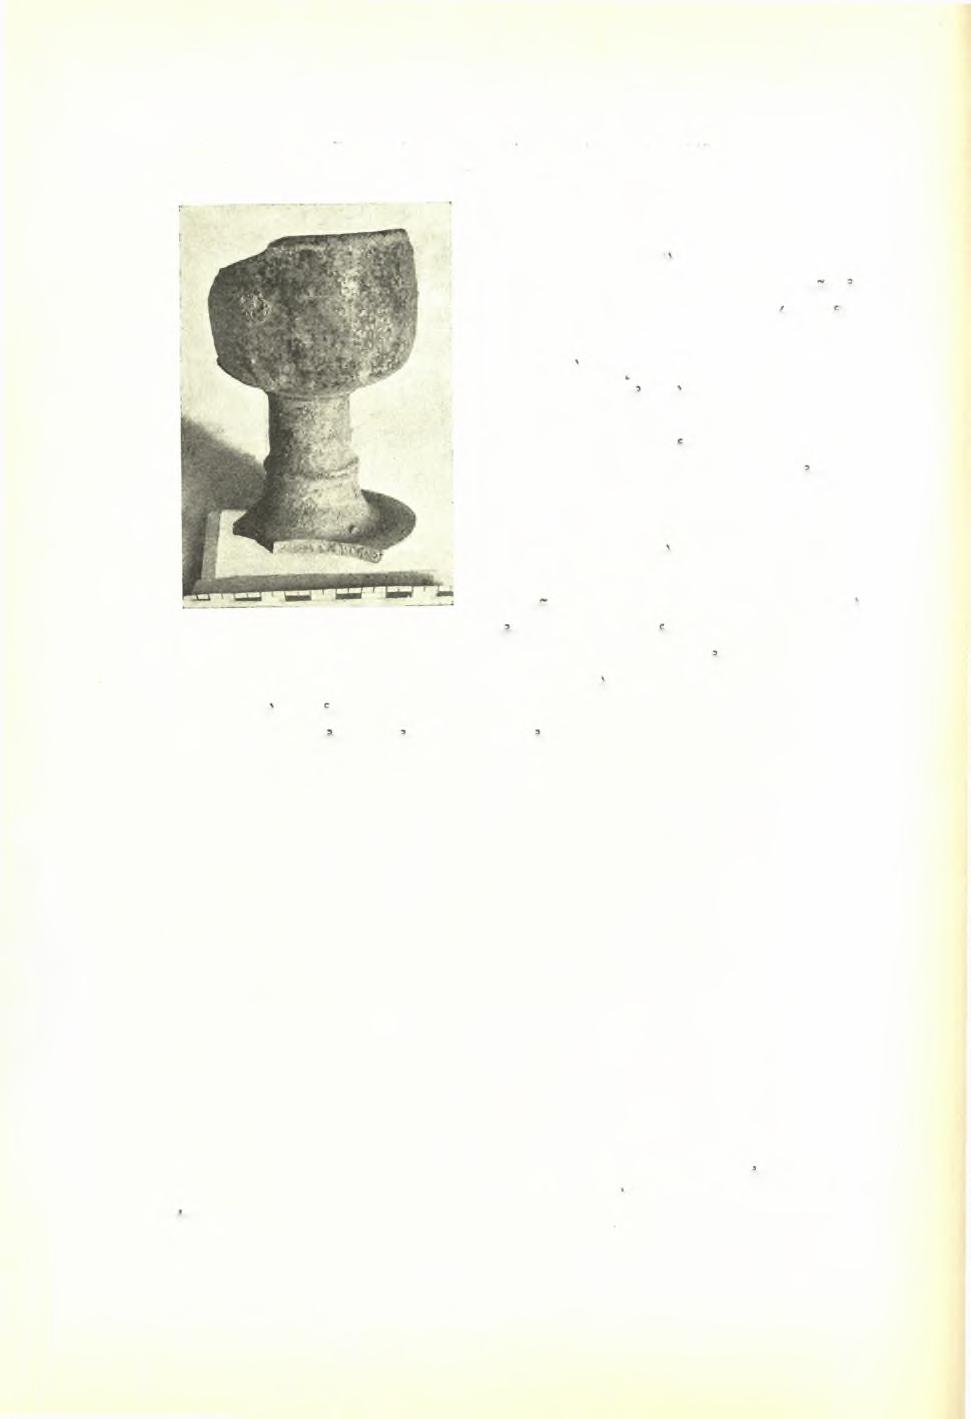 114 Πρακτικά τής 'Αρχαιολογικής Εταιρείας 1937 ρως B.S.A. 17, 1910/11, πίν. XVI, 36, 38, 39. Hesperia, 2, 1933, σ. 310, είκ. 7 a, c, e, f, h-j, 1.).